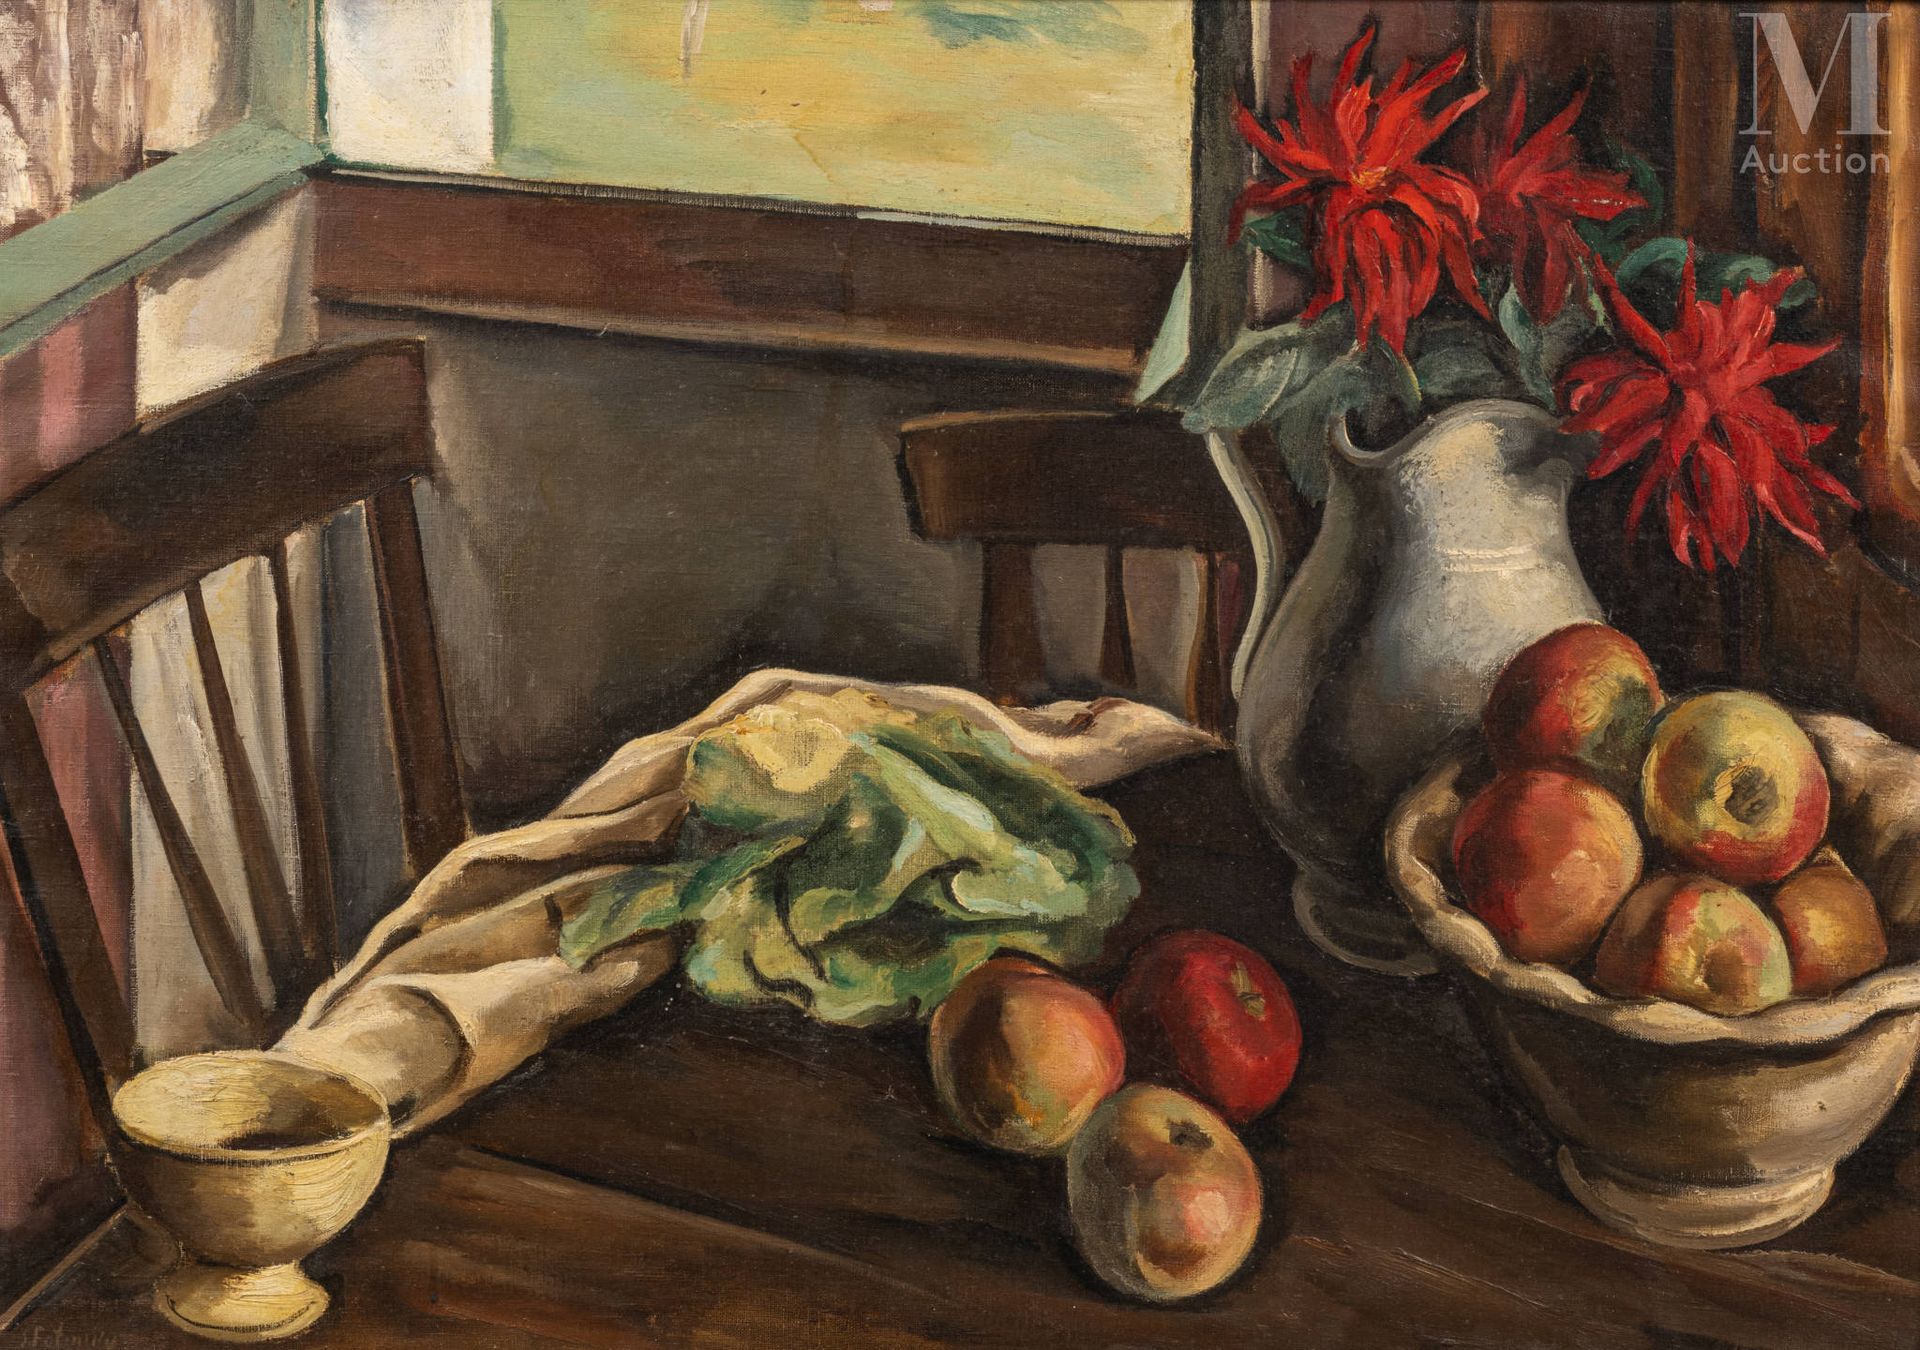 Serge FOTINSKY (Odessa 1887 - 1971) Composizione con mele e un mazzo di dalie


&hellip;